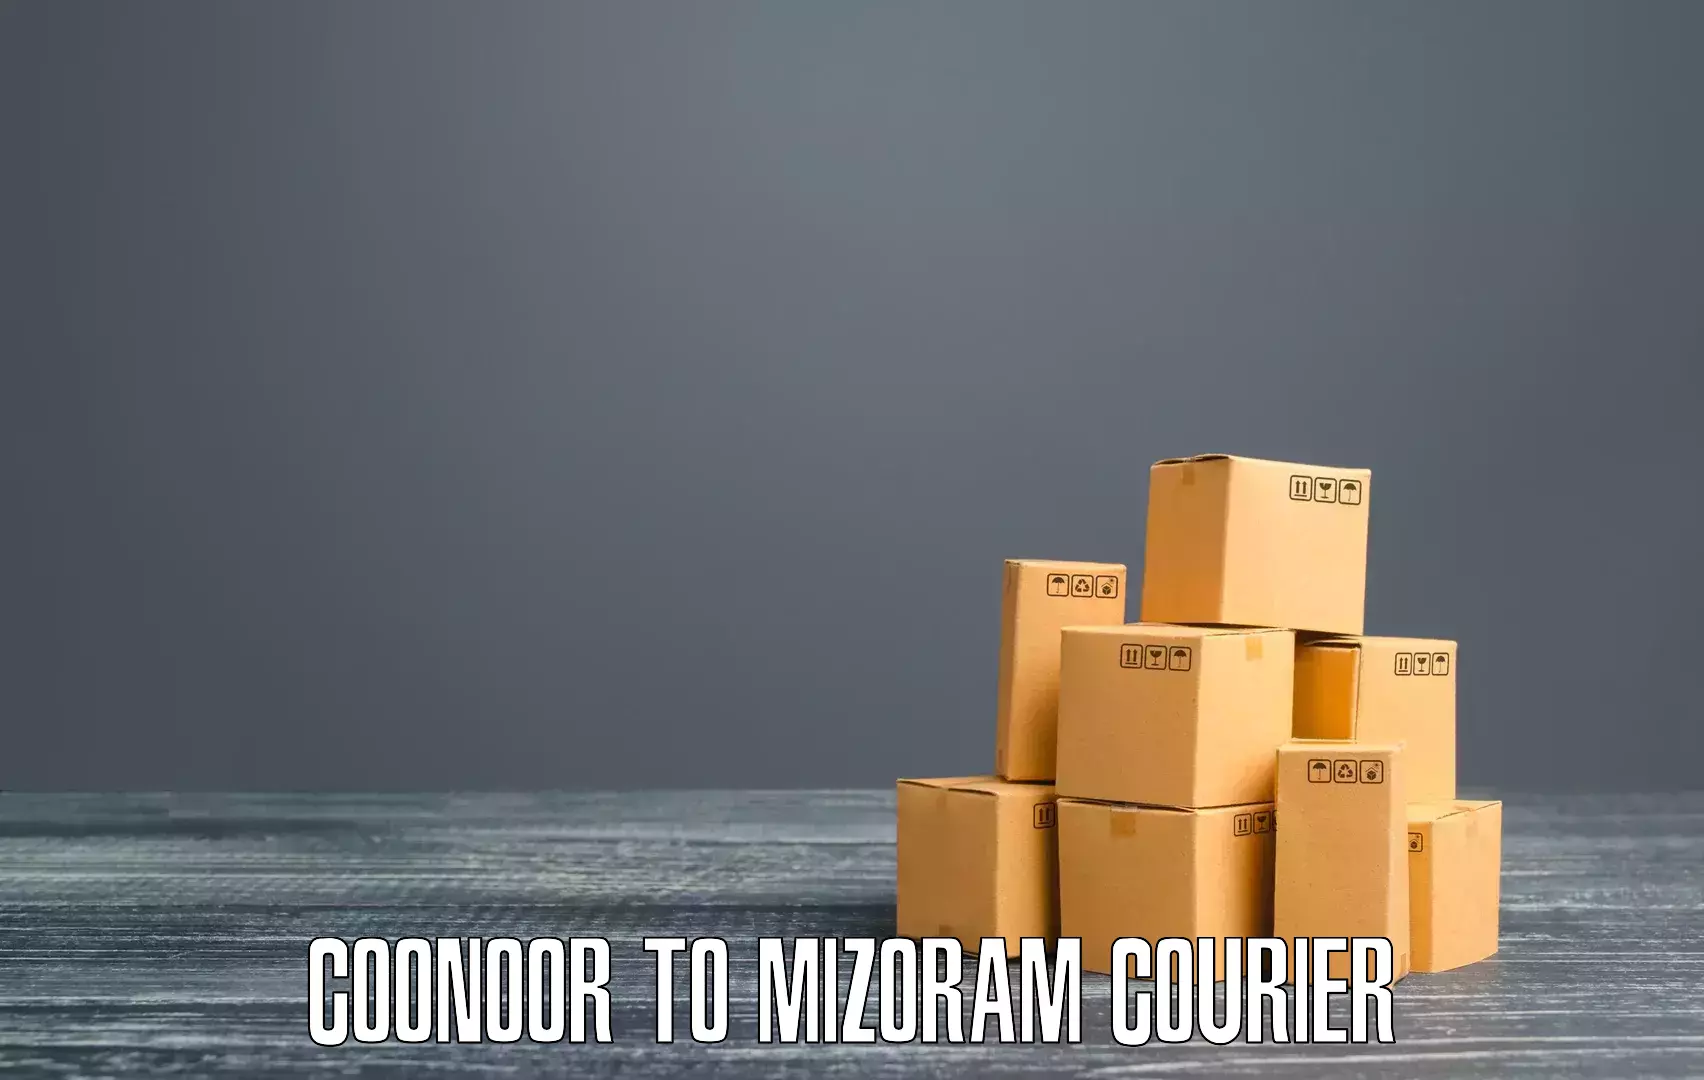 High-speed parcel service Coonoor to Mizoram